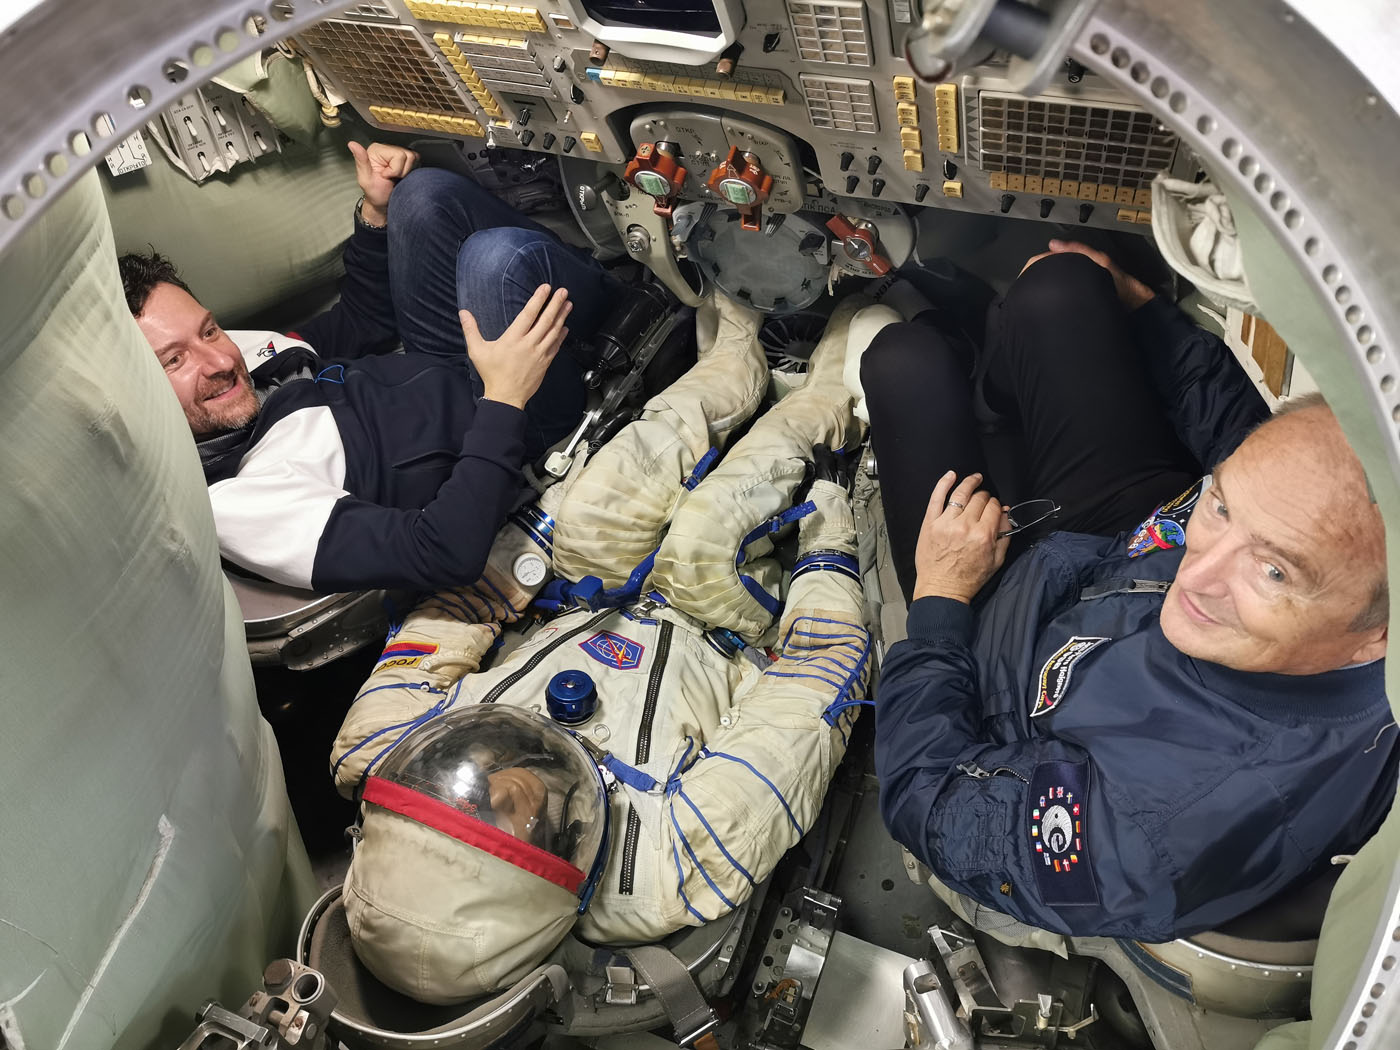 Fabrice avec l'astronaute J-P Haigneré, à bord d'une capsule Soyouz à l'usine RKK Energia, octobre 2019 